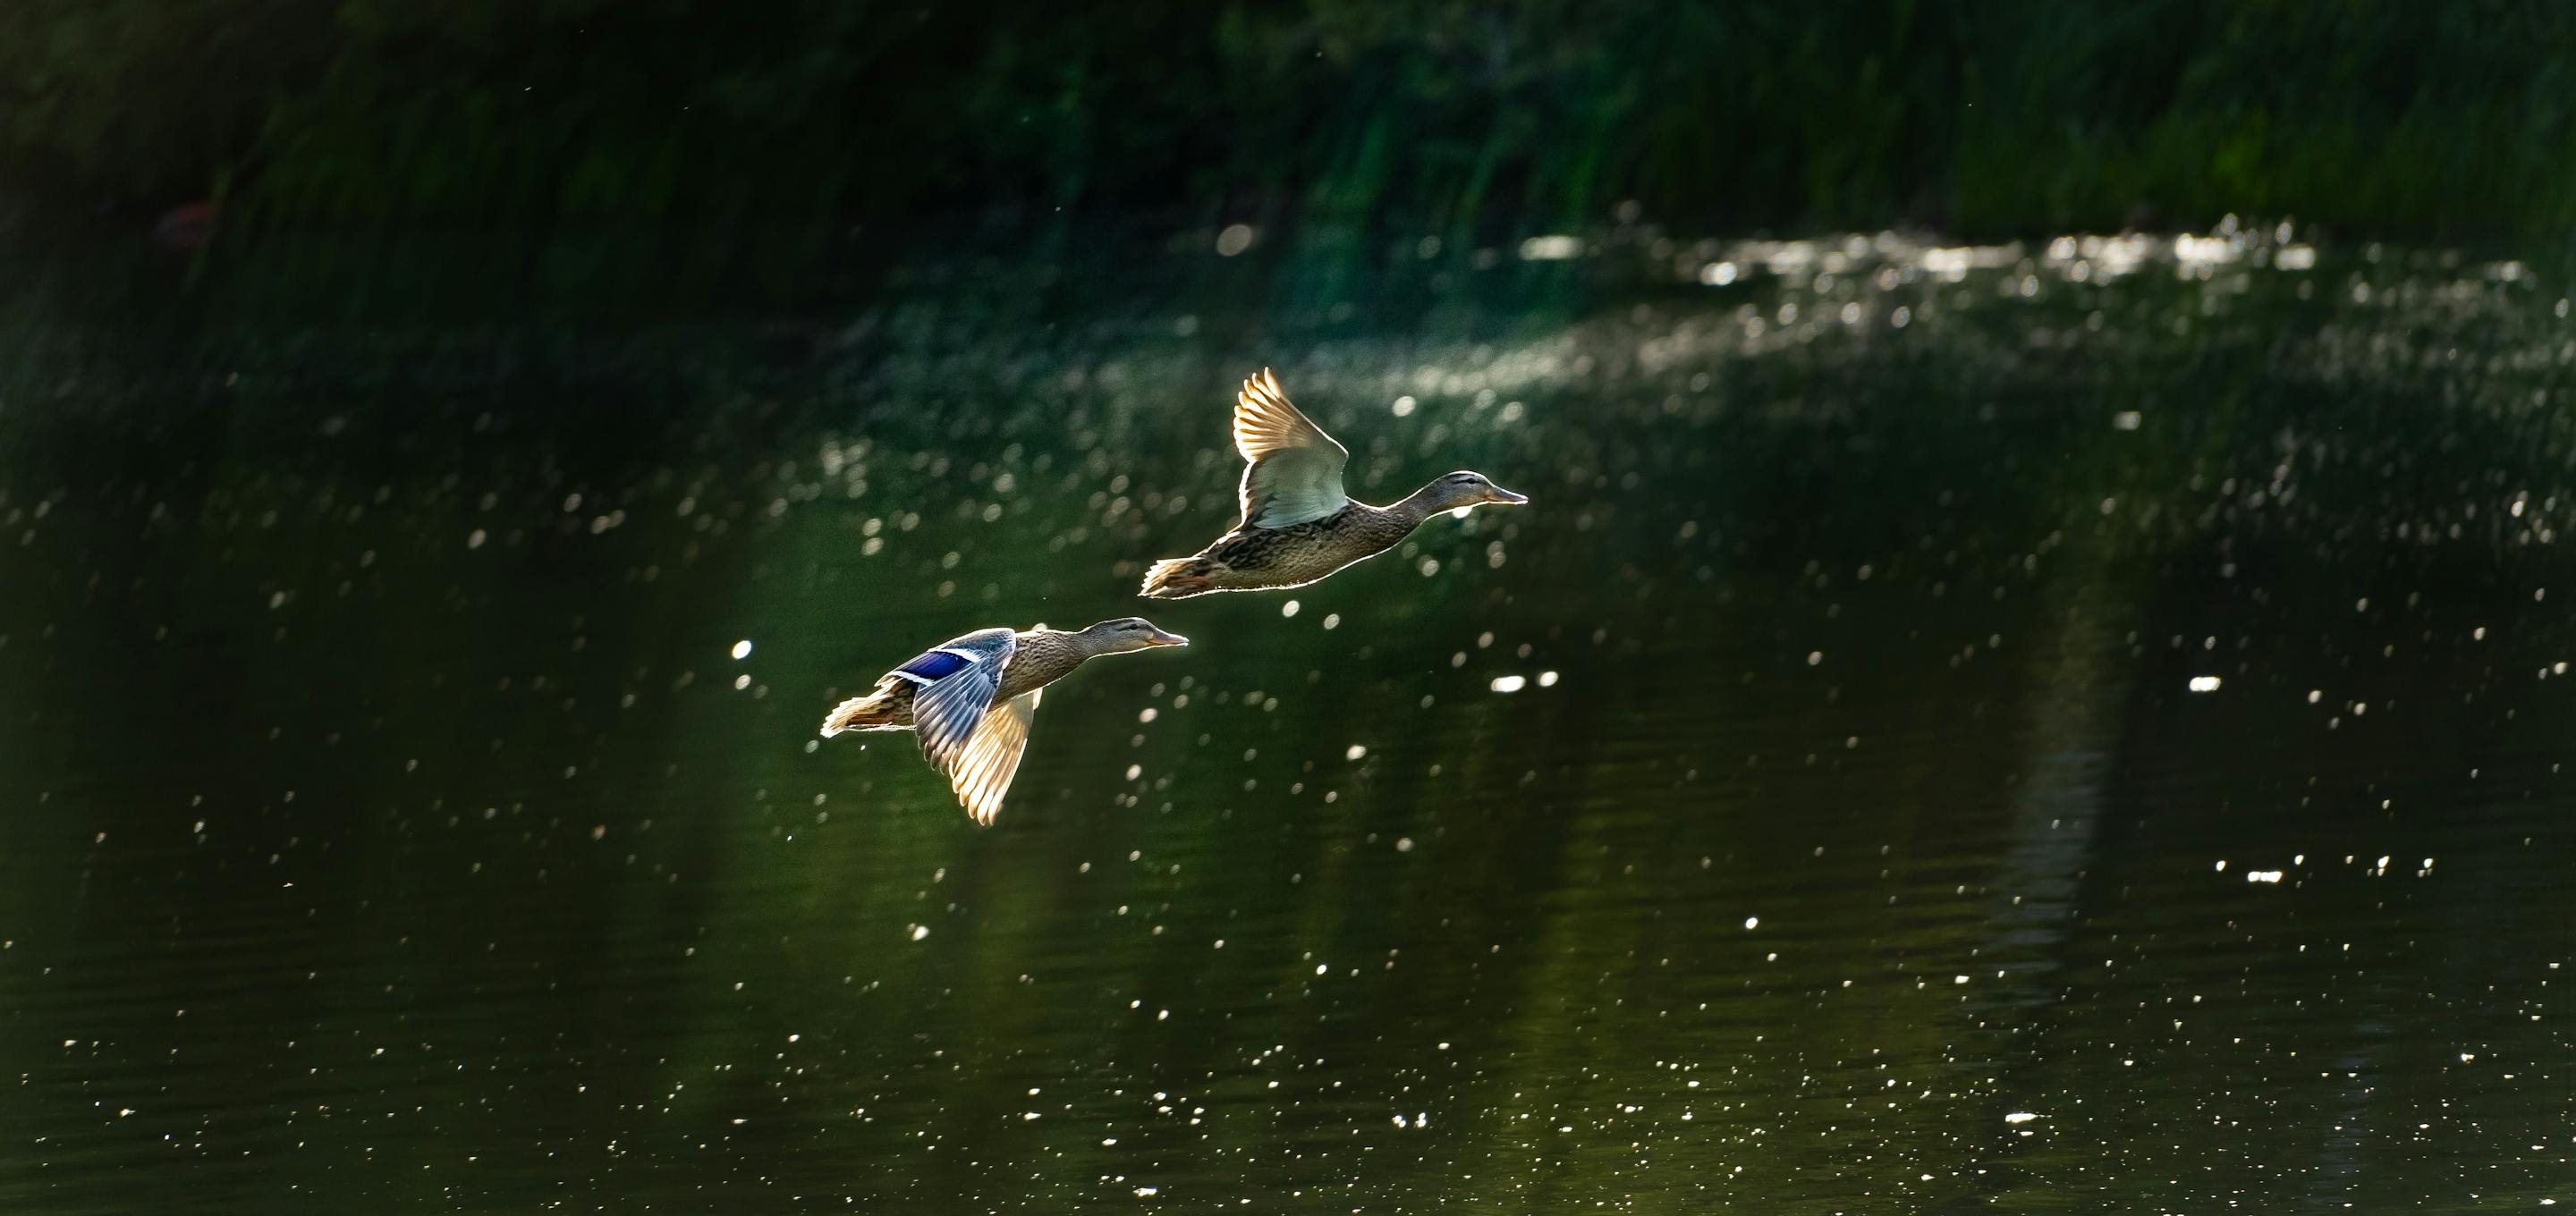 Two Mallard ducks mid-flight